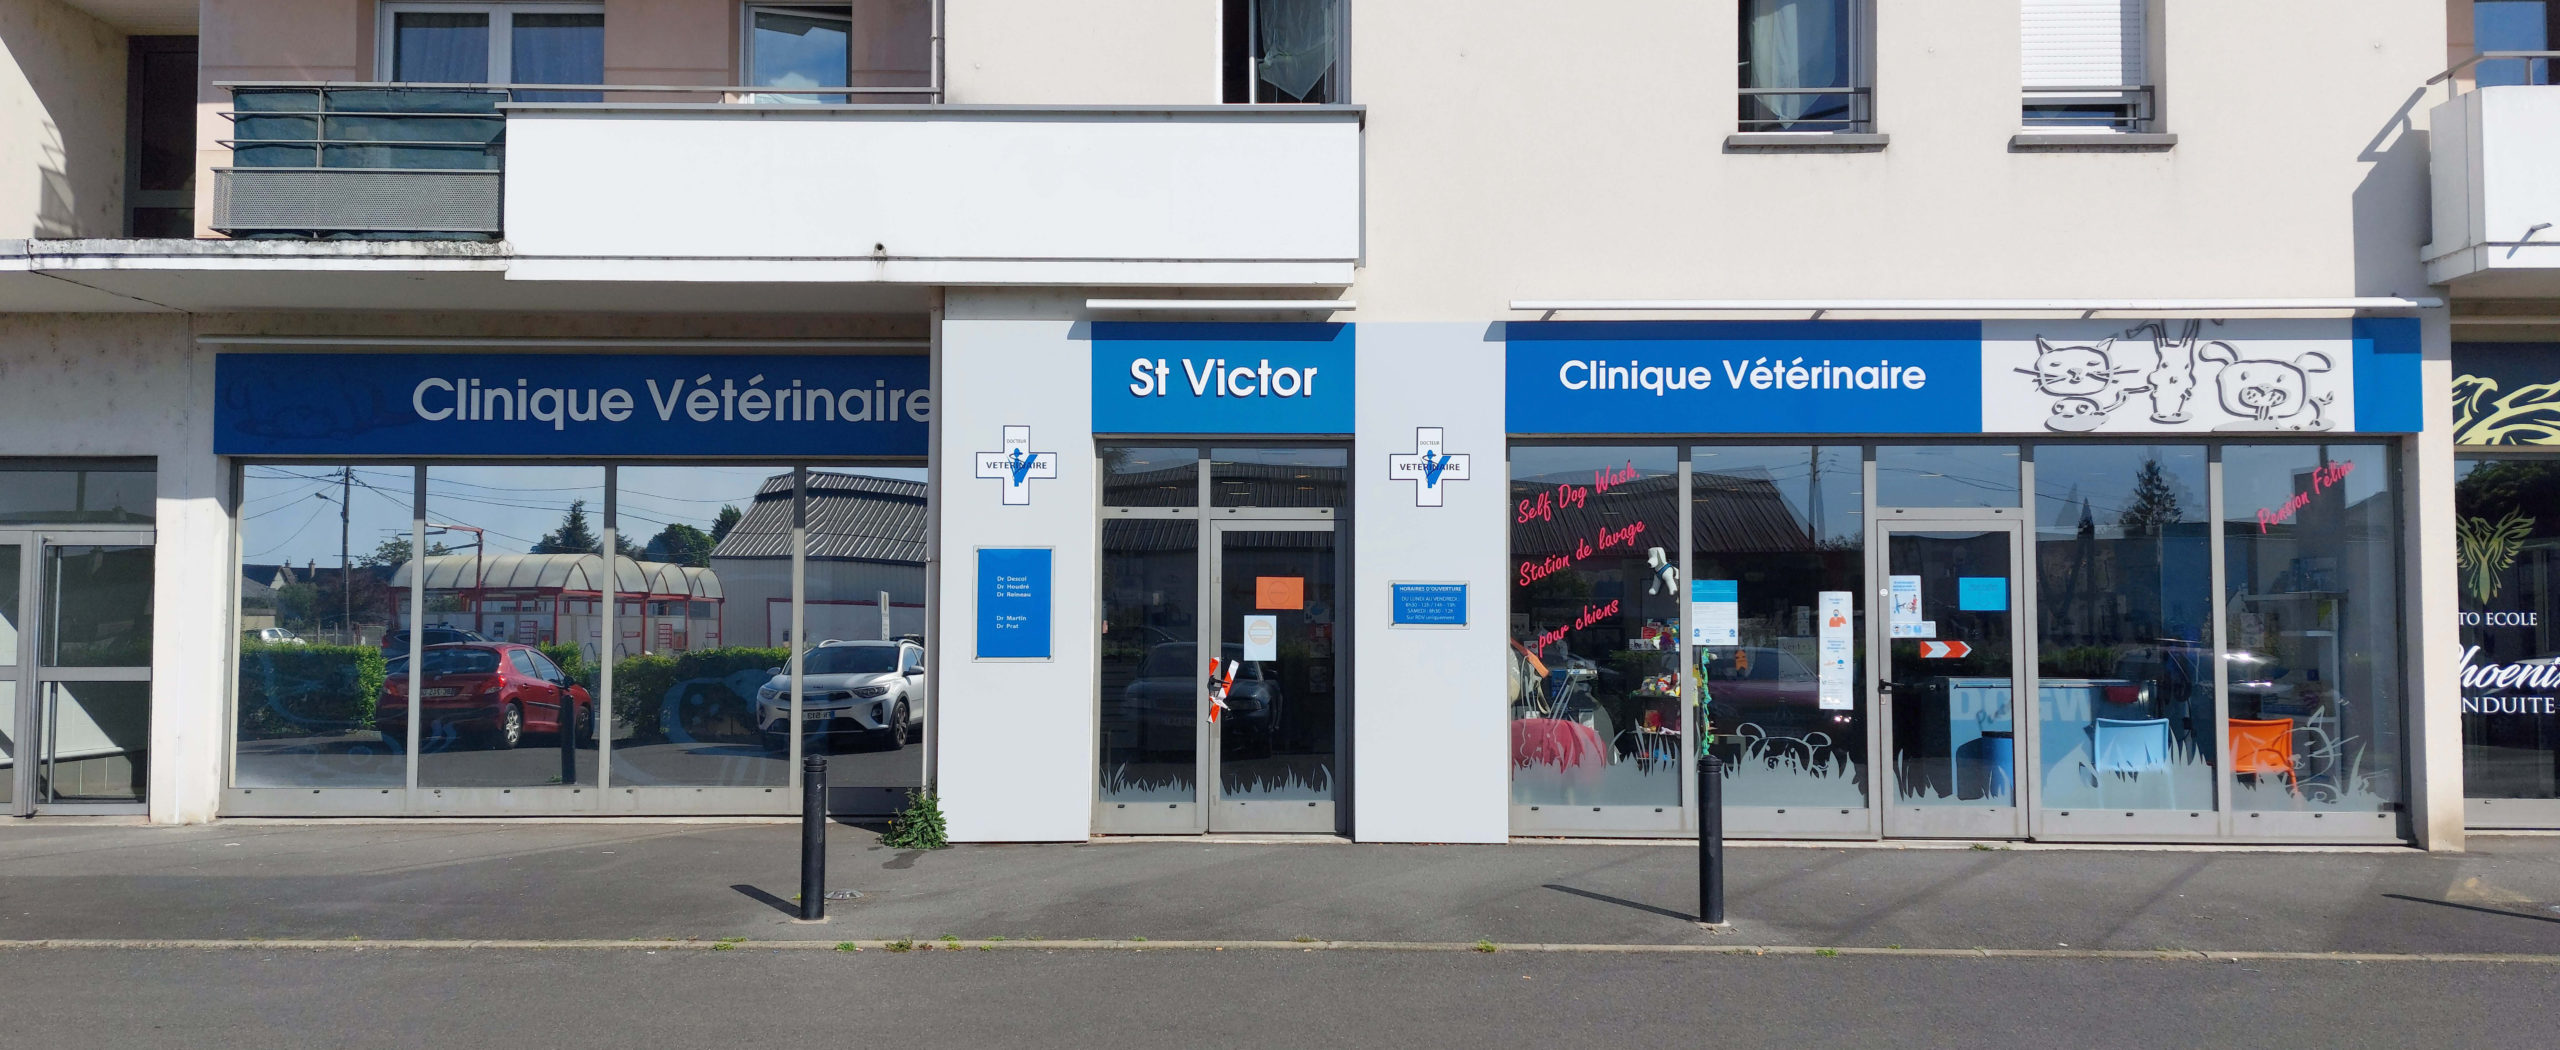 Clinique Saint Victor, clinique vétérinaire du groupe Fovéa